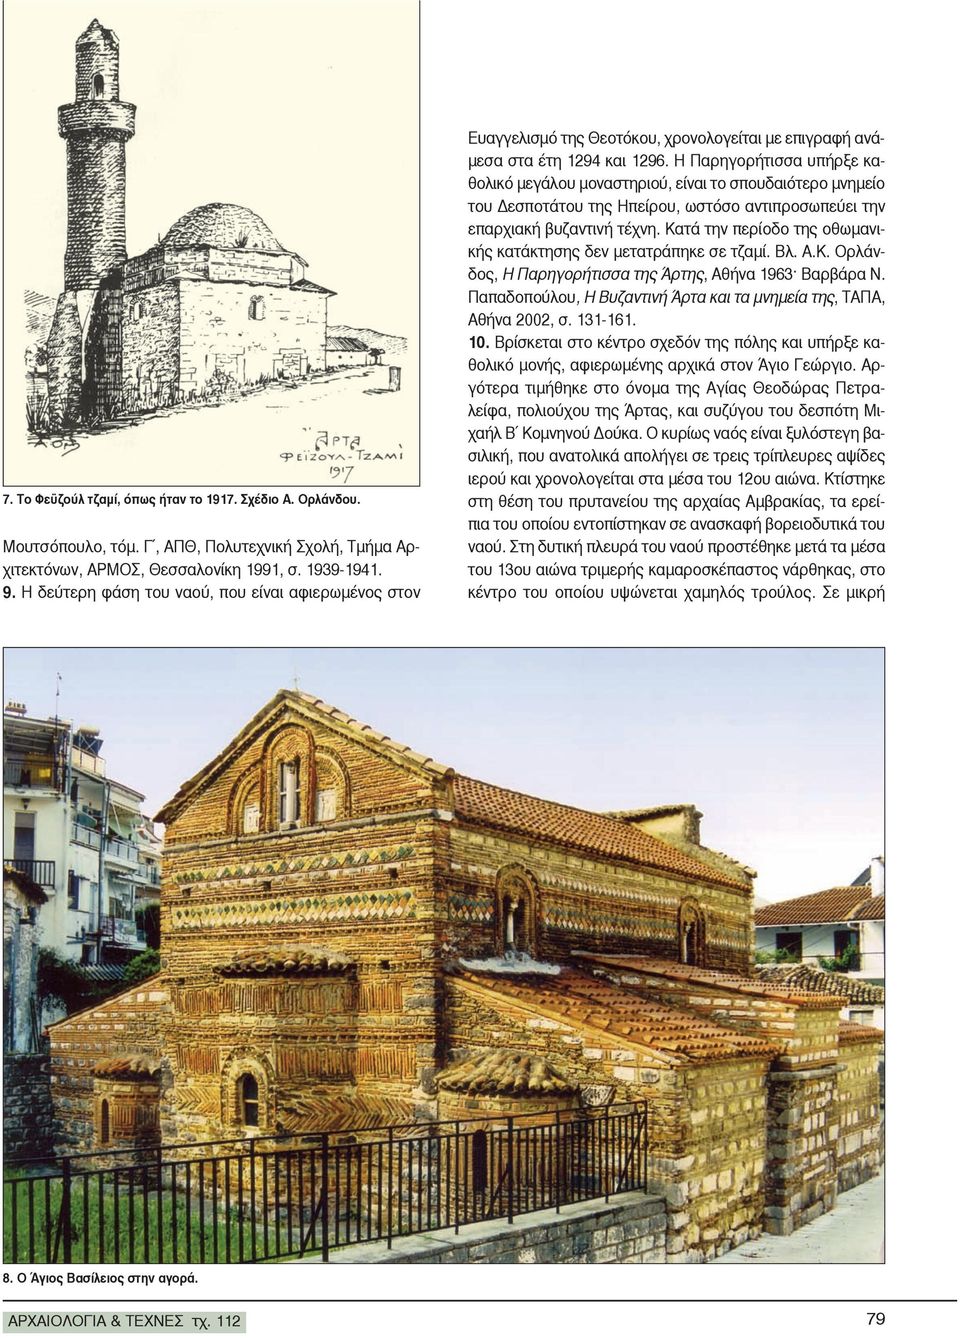 Η Παρηγορήτισσα υπήρξε καθολικό μεγάλου μοναστηριού, είναι το σπουδαιότερο μνημείο του Δεσποτάτου της Ηπείρου, ωστόσο αντιπροσωπεύει την επαρχιακή βυζαντινή τέχνη.